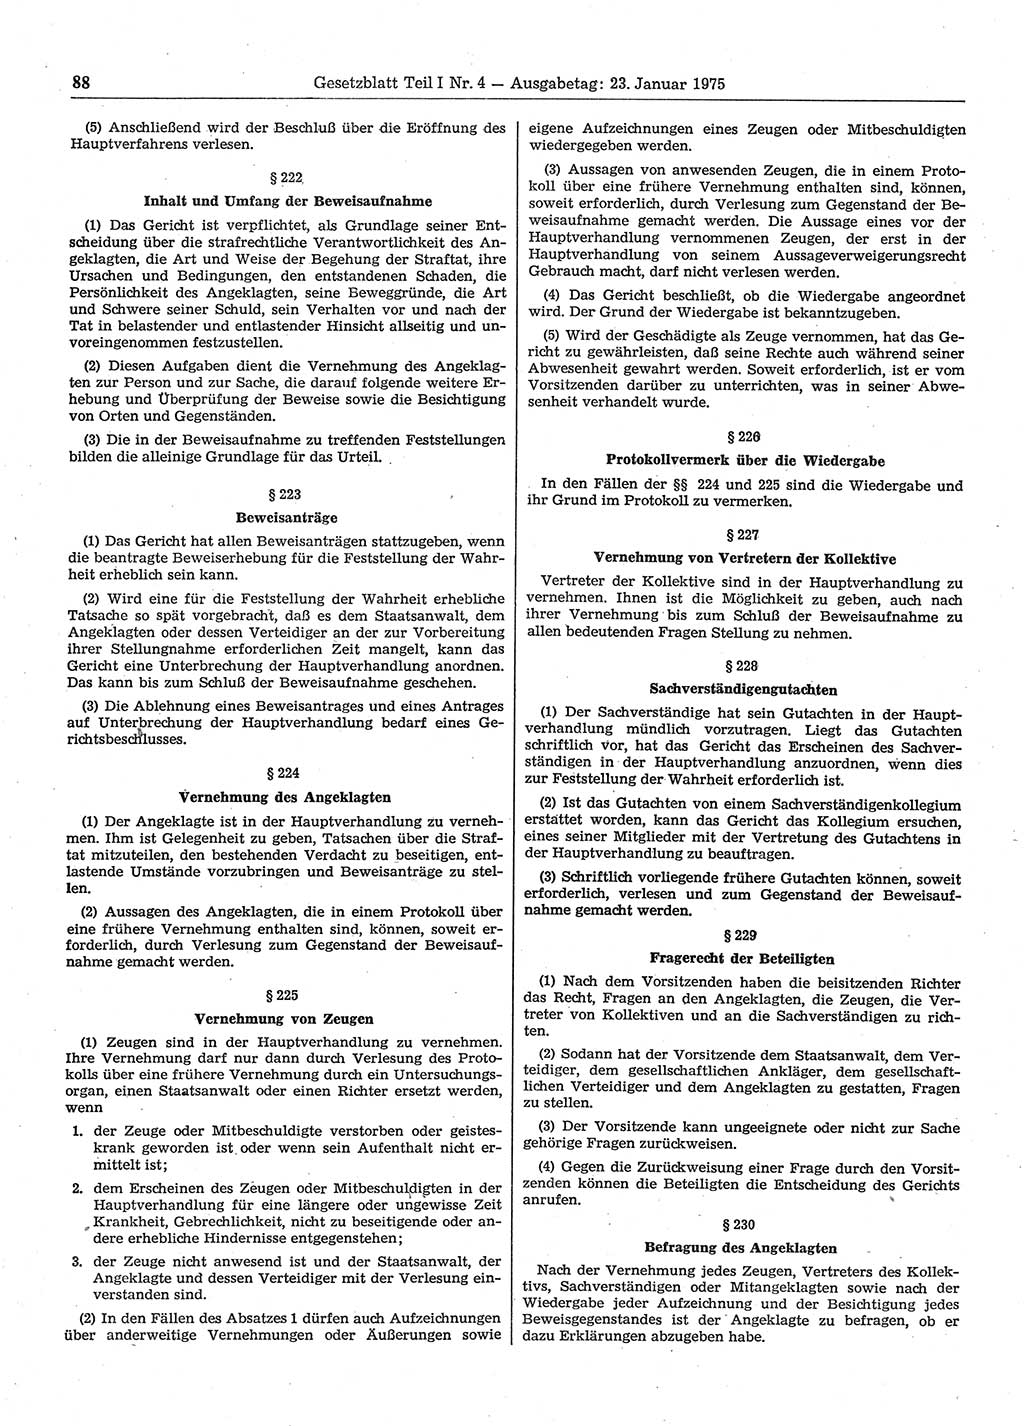 Gesetzblatt (GBl.) der Deutschen Demokratischen Republik (DDR) Teil Ⅰ 1975, Seite 88 (GBl. DDR Ⅰ 1975, S. 88)